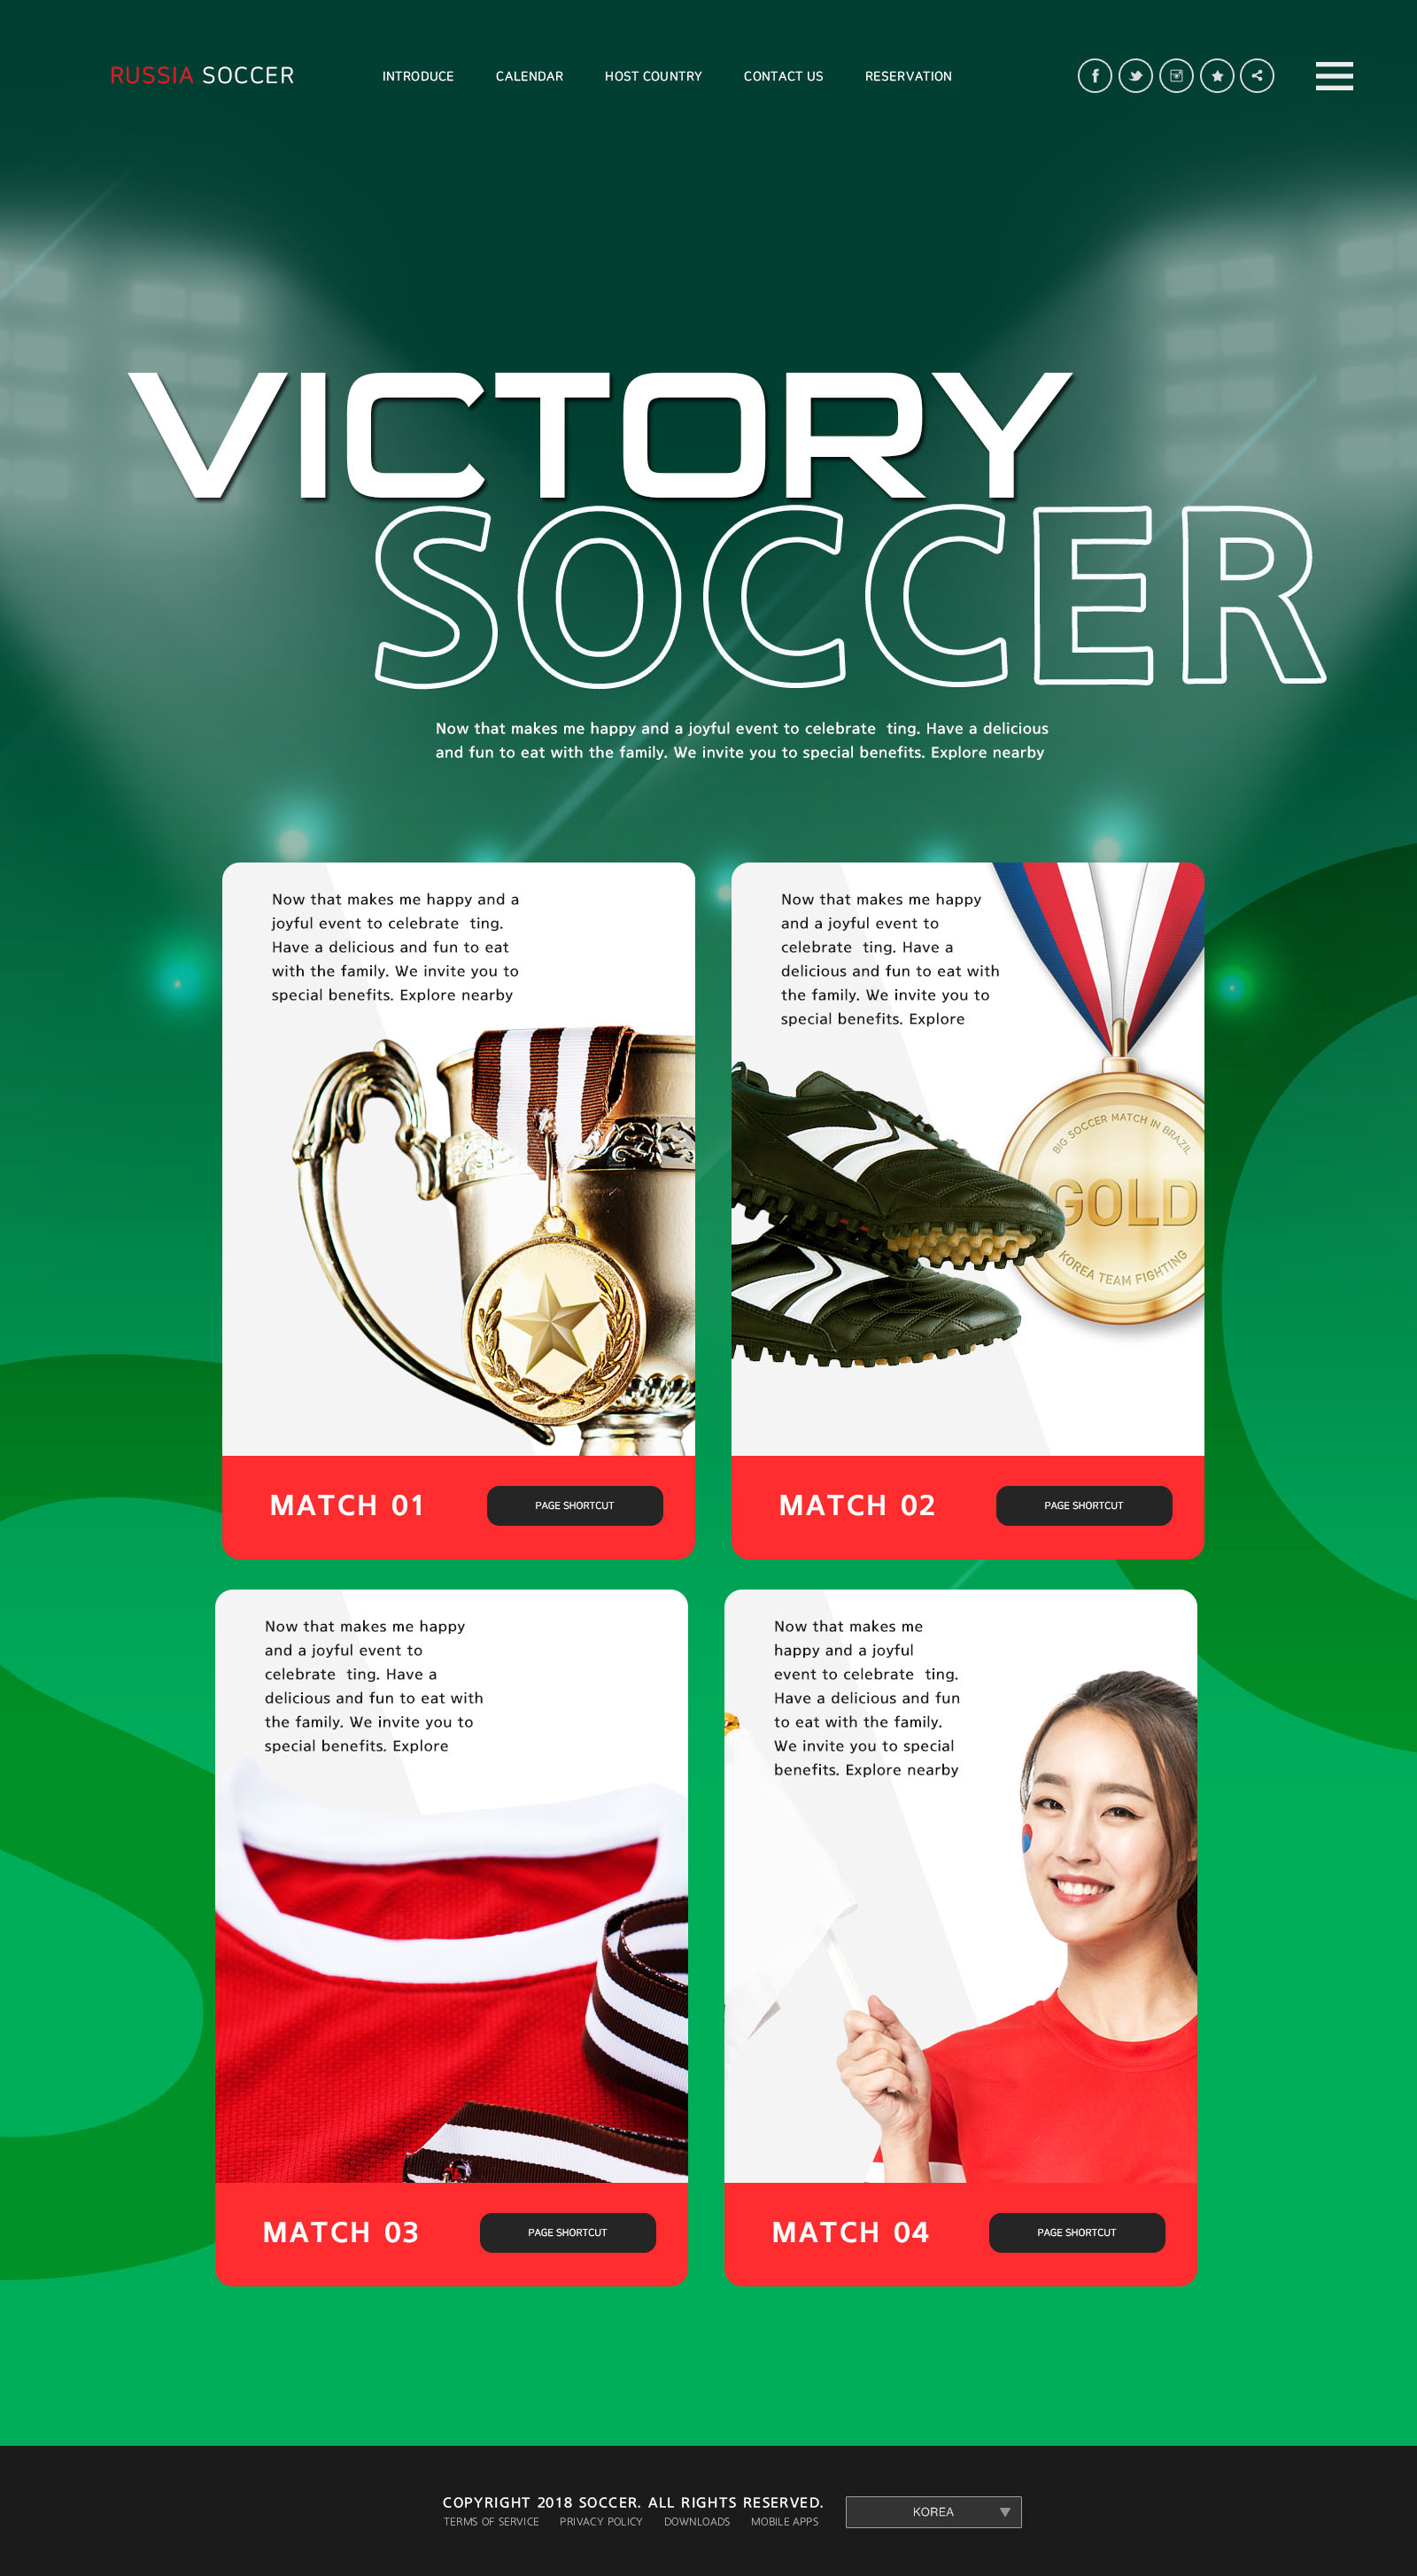 世界杯足球专题广告设计PSD模板蚂蚁素材精选(韩国风格)插图(5)